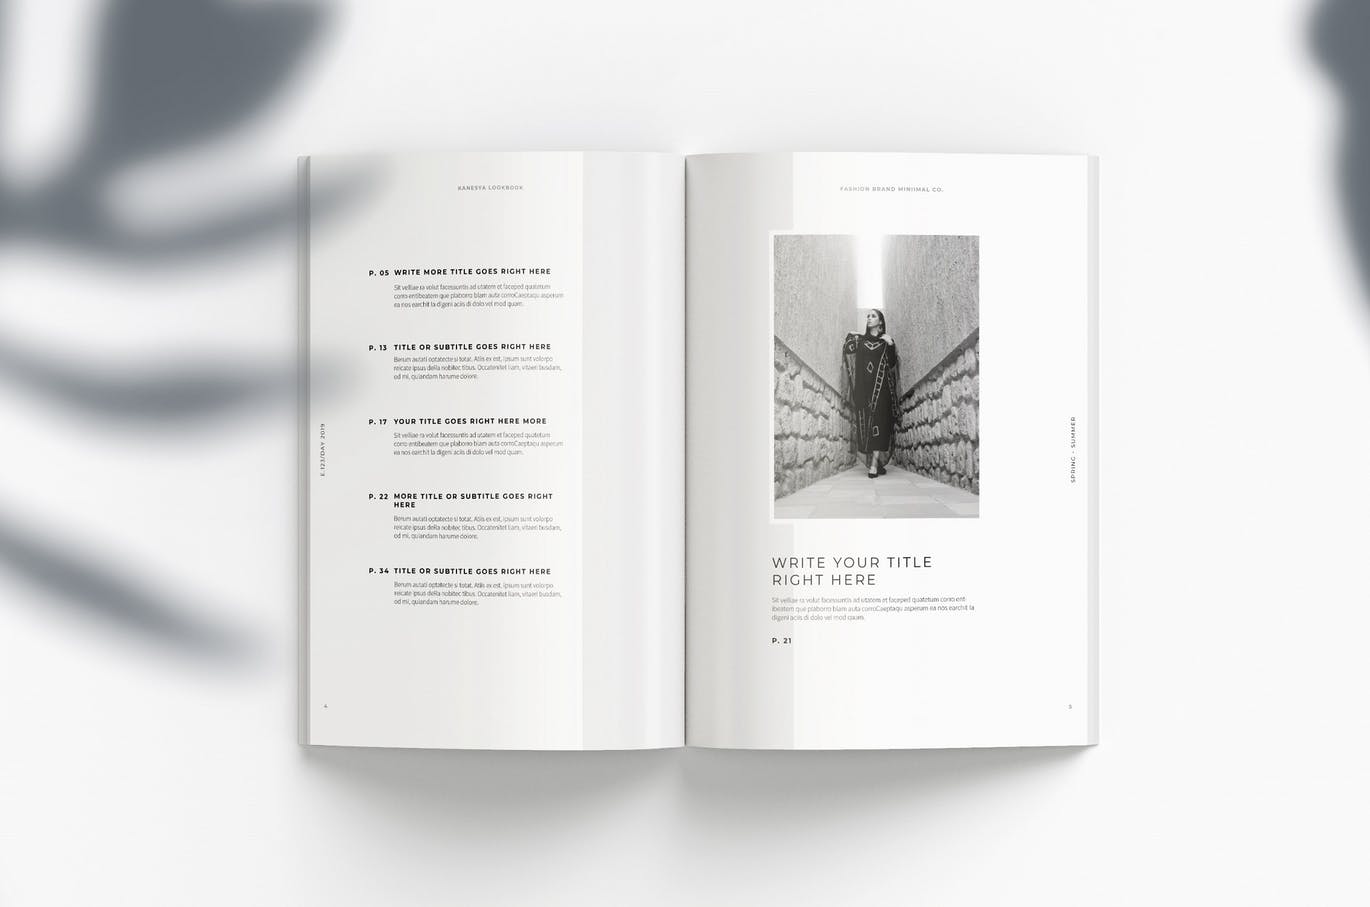 时尚/摄影/食品/生活方式/建筑主题使用手册画册设计模板 Lookbook插图(3)